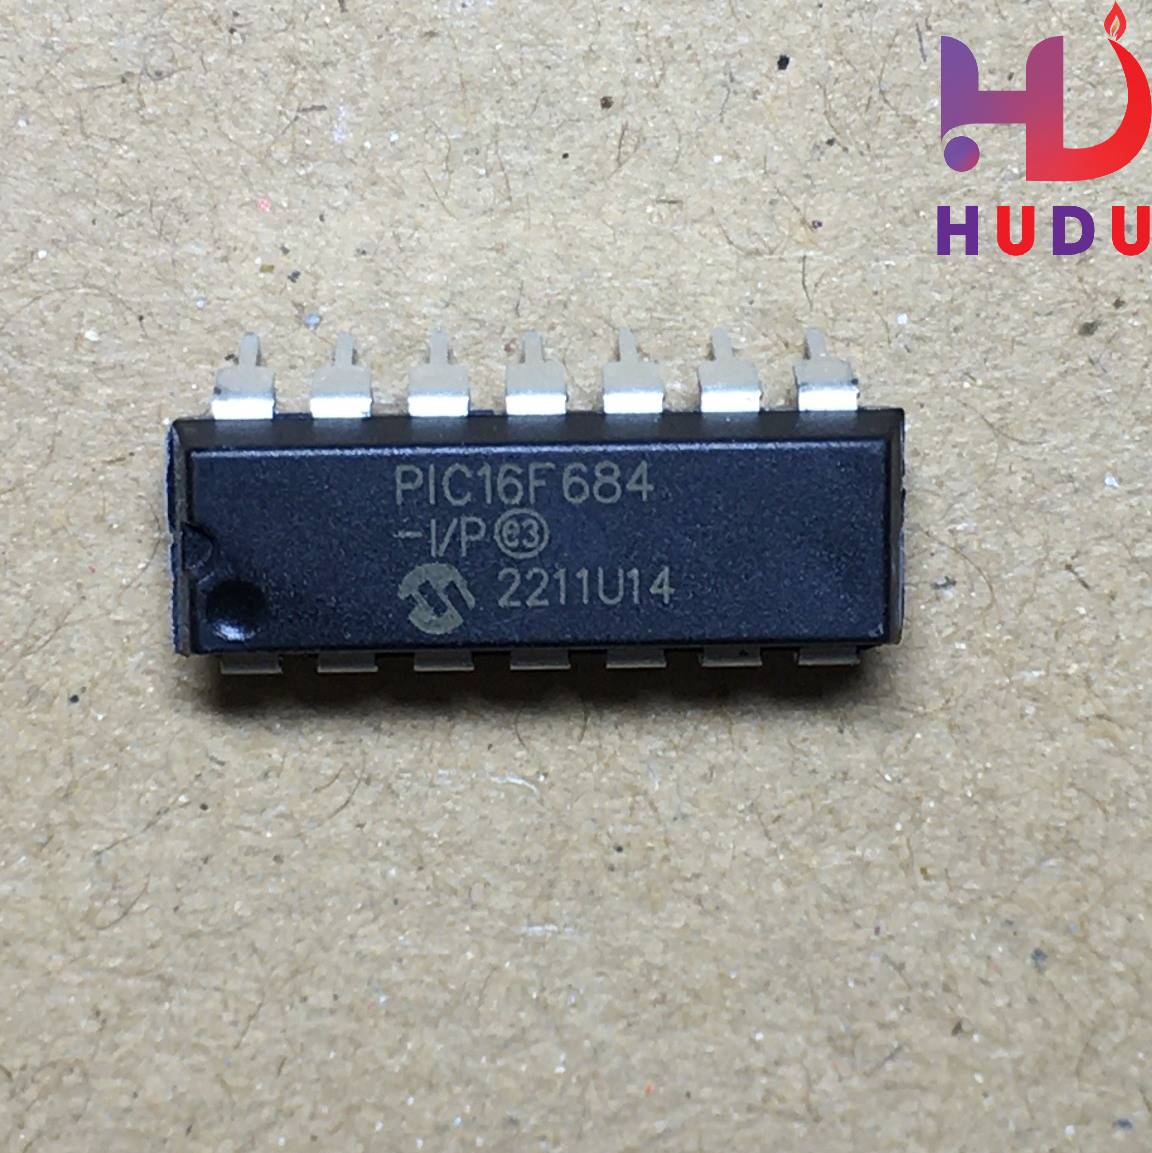 Linh kiện Hudu cung cấp IC PIC16F684 mới chính hãng chất lượng tốt cho khách hàng